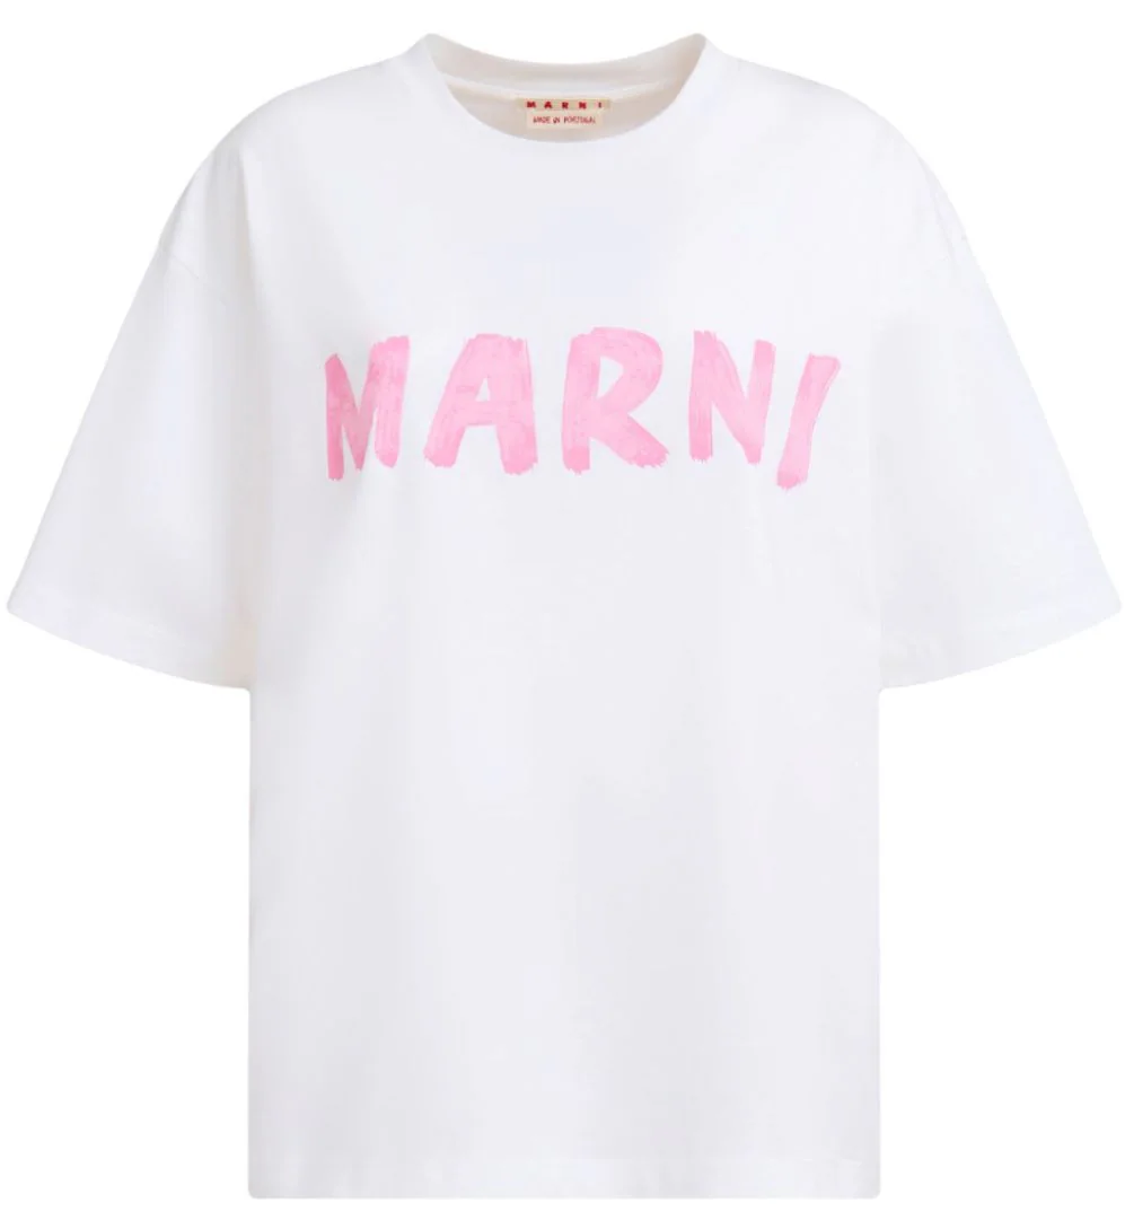 shop Marni  T-shirts: T-shirts Marni, fit ampio, girocollo, manica corta, logo stampato sul davanti.

Composizione: 100% cotone. number 2727